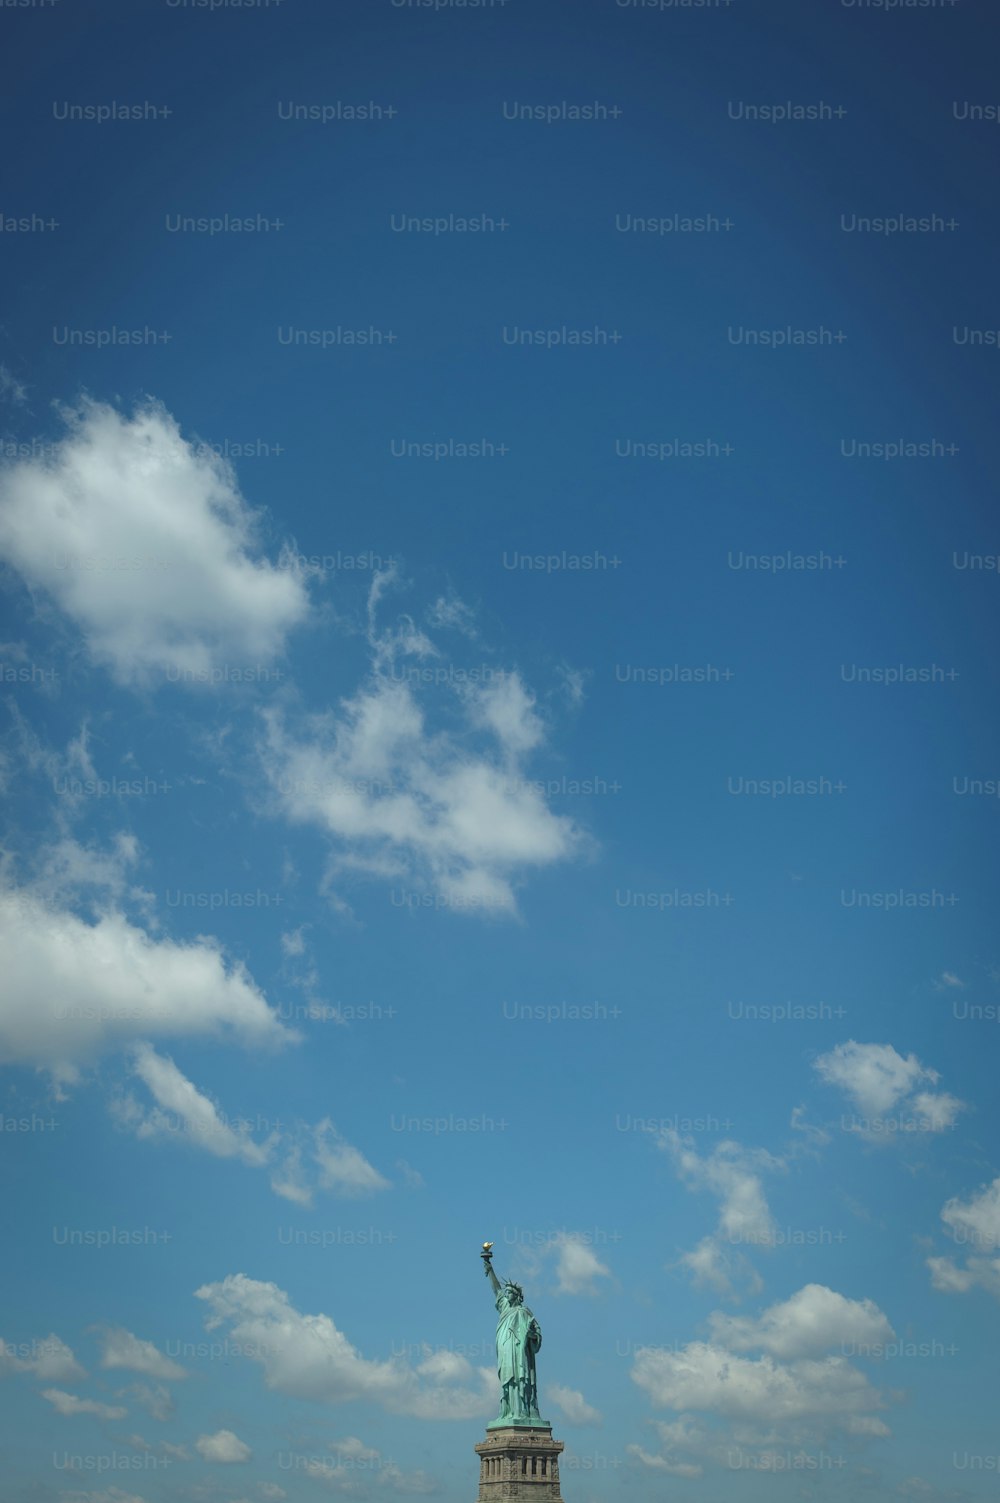 Die Freiheitsstatue wird vor einem blauen Himmel gezeigt